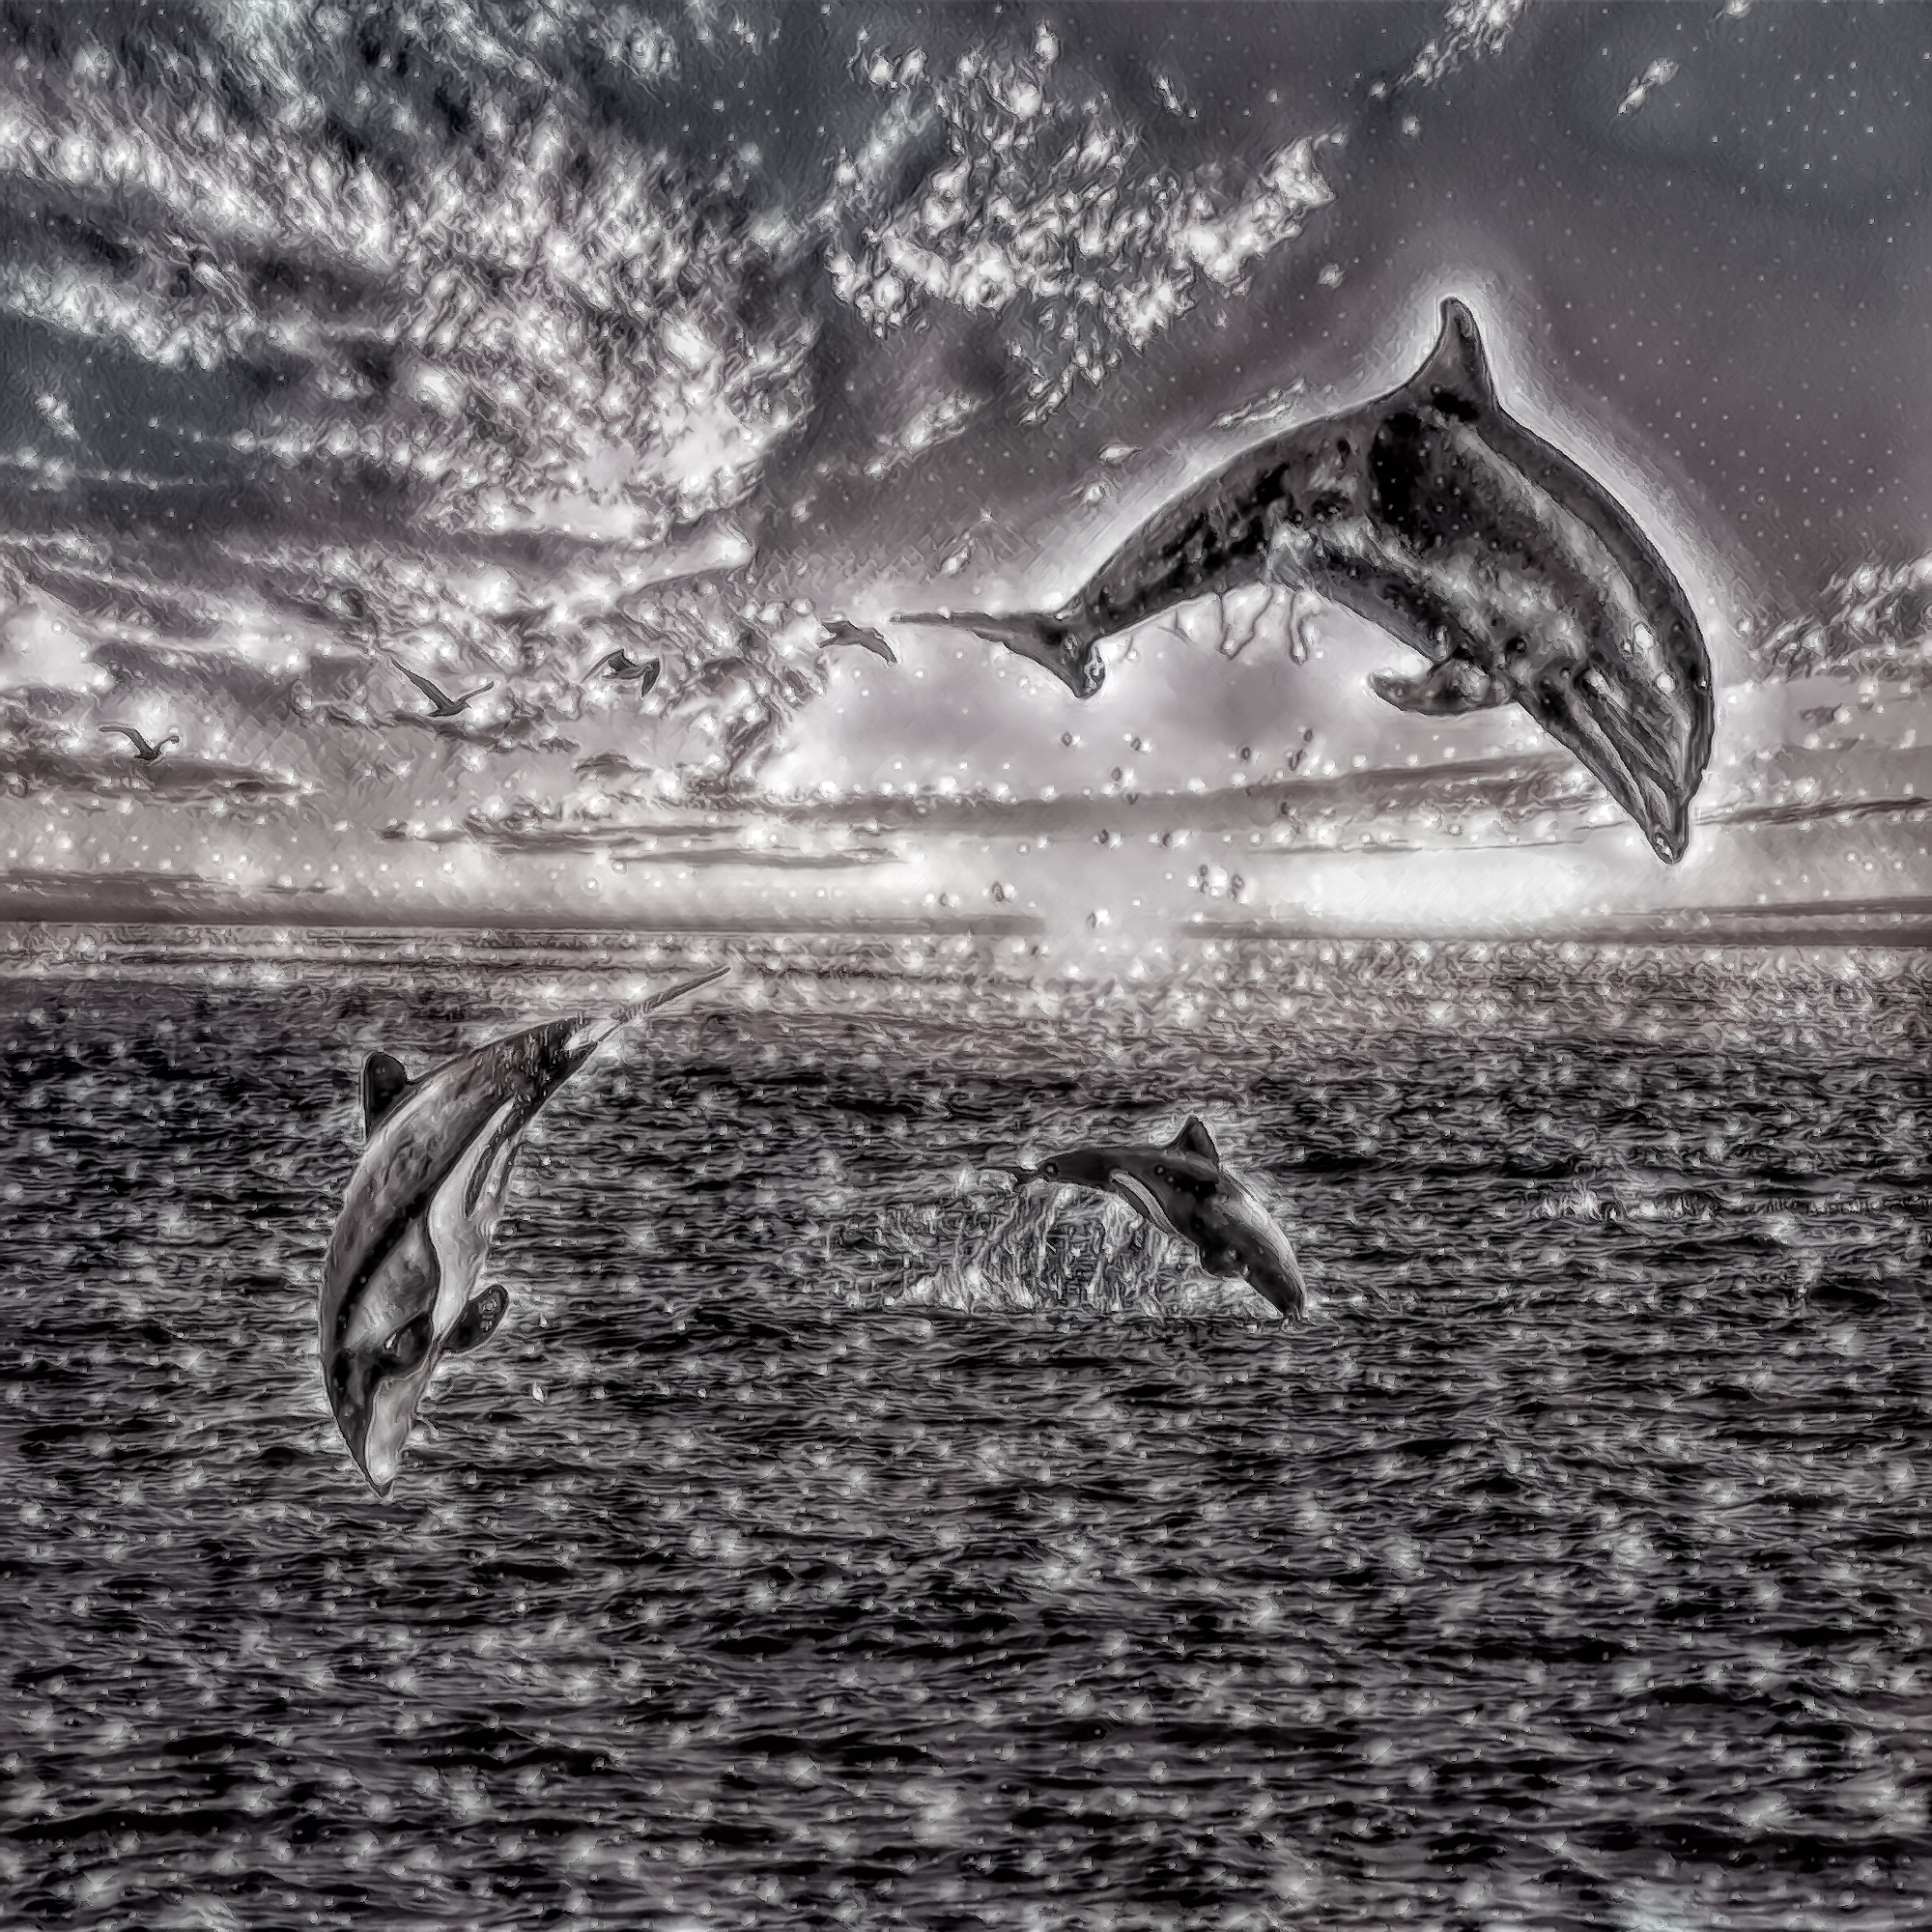 無料壁紙 背景画像素材 イルカのジャンプとキレイな星空 夕暮れの海 Free Illustlation くりえいてぃぶ